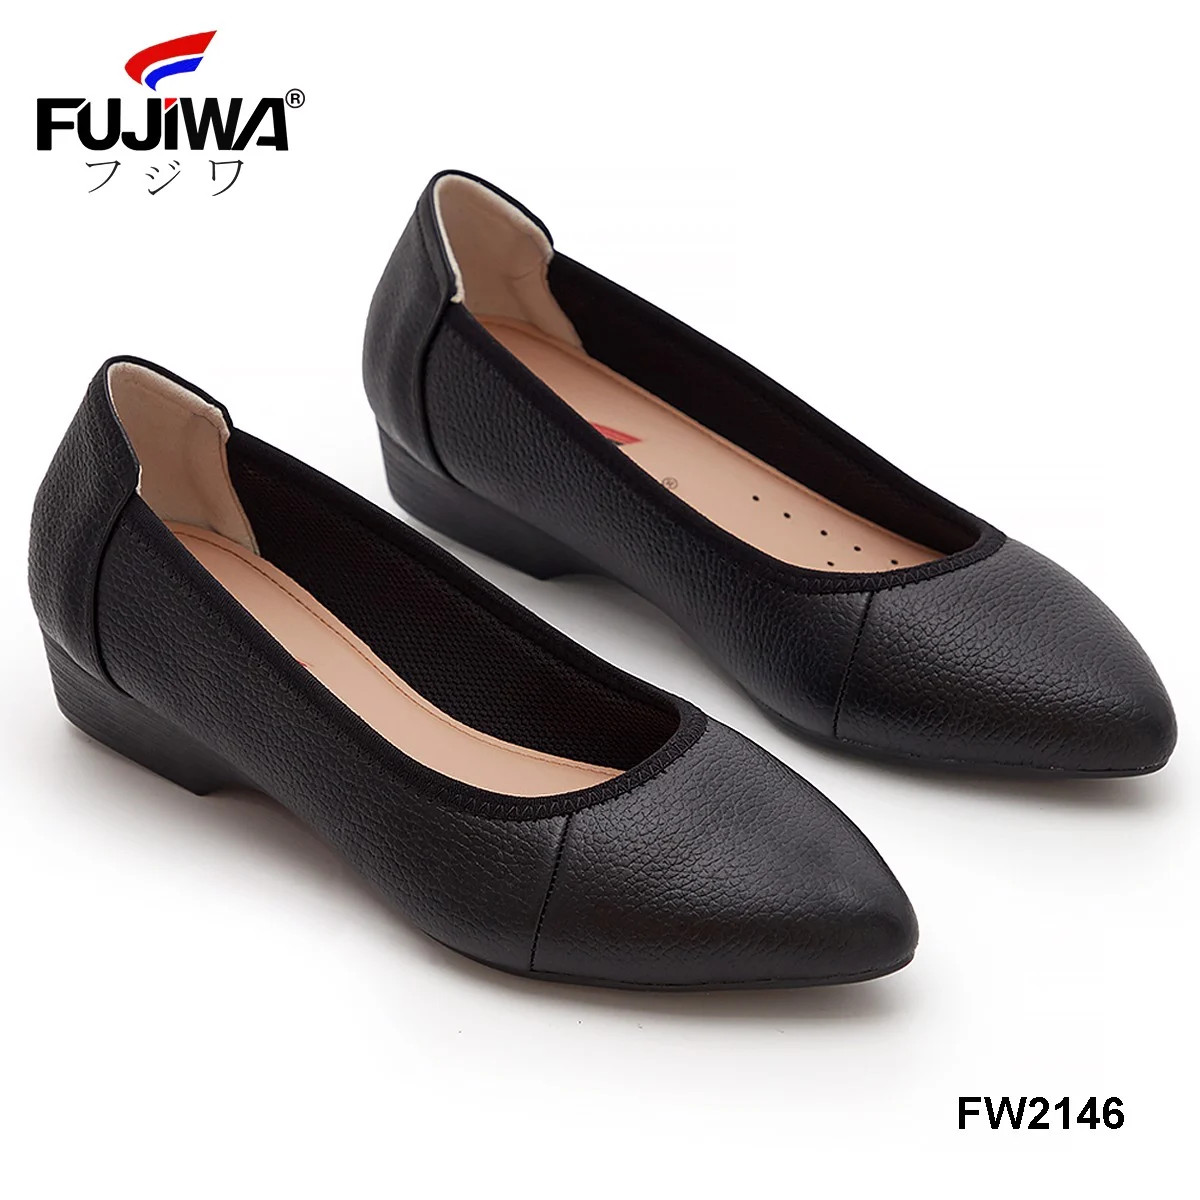 Giày Nữ Da Bò FUJIWA - FW2146. Da Thật Cao Cấp. Được Đóng Thủ Công